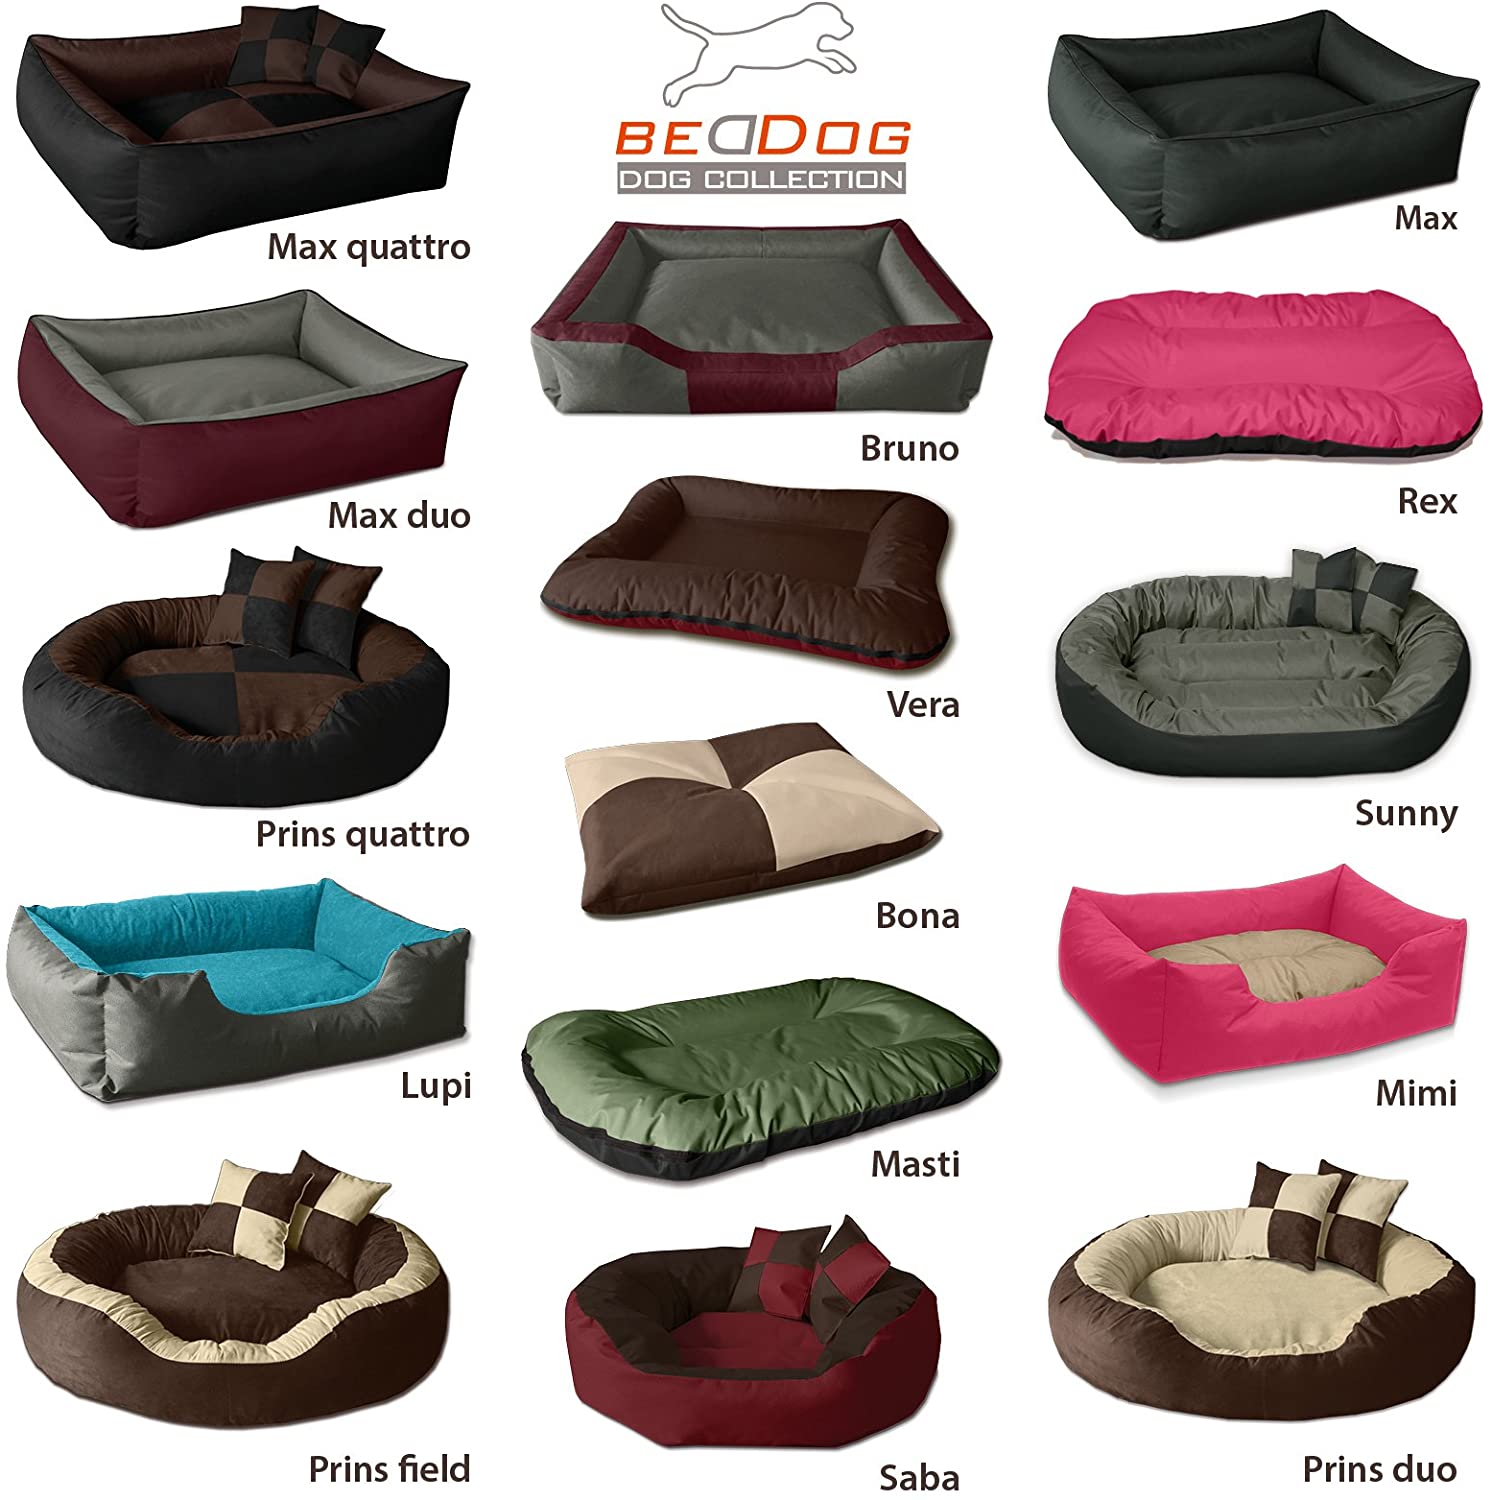  BedDog® Bruno Beige/Marron XL Aprox. 100x85cm colchón para Perro, 15 Colores, Cama para Perro, sofá para Perro, Cesta para Perro 